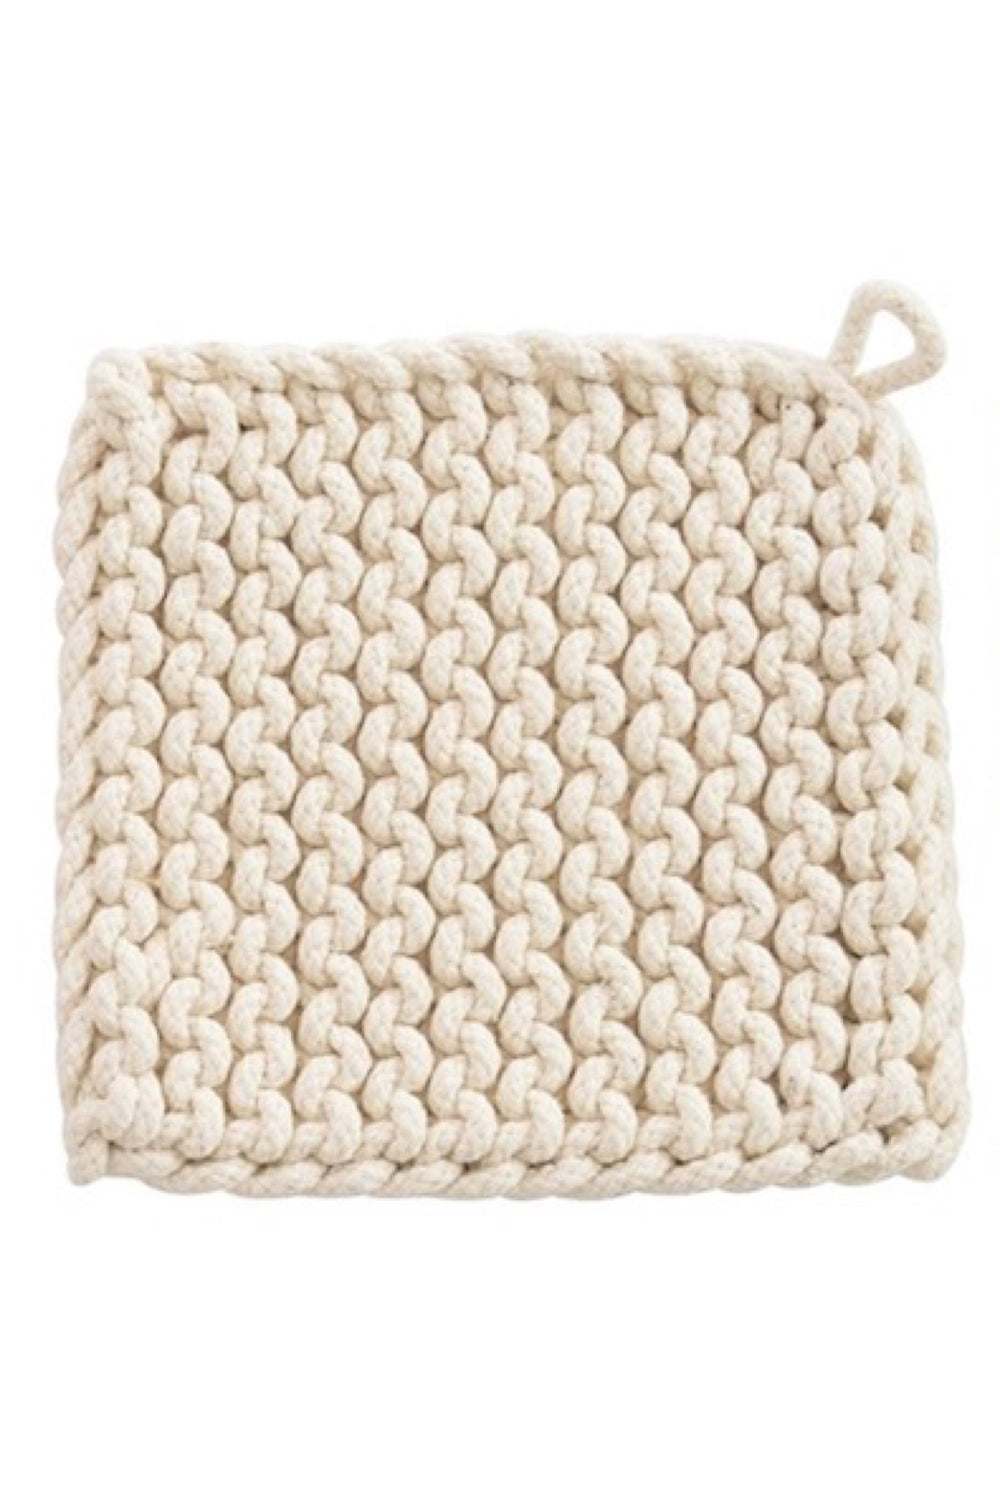 Crochet Pot Holder 002